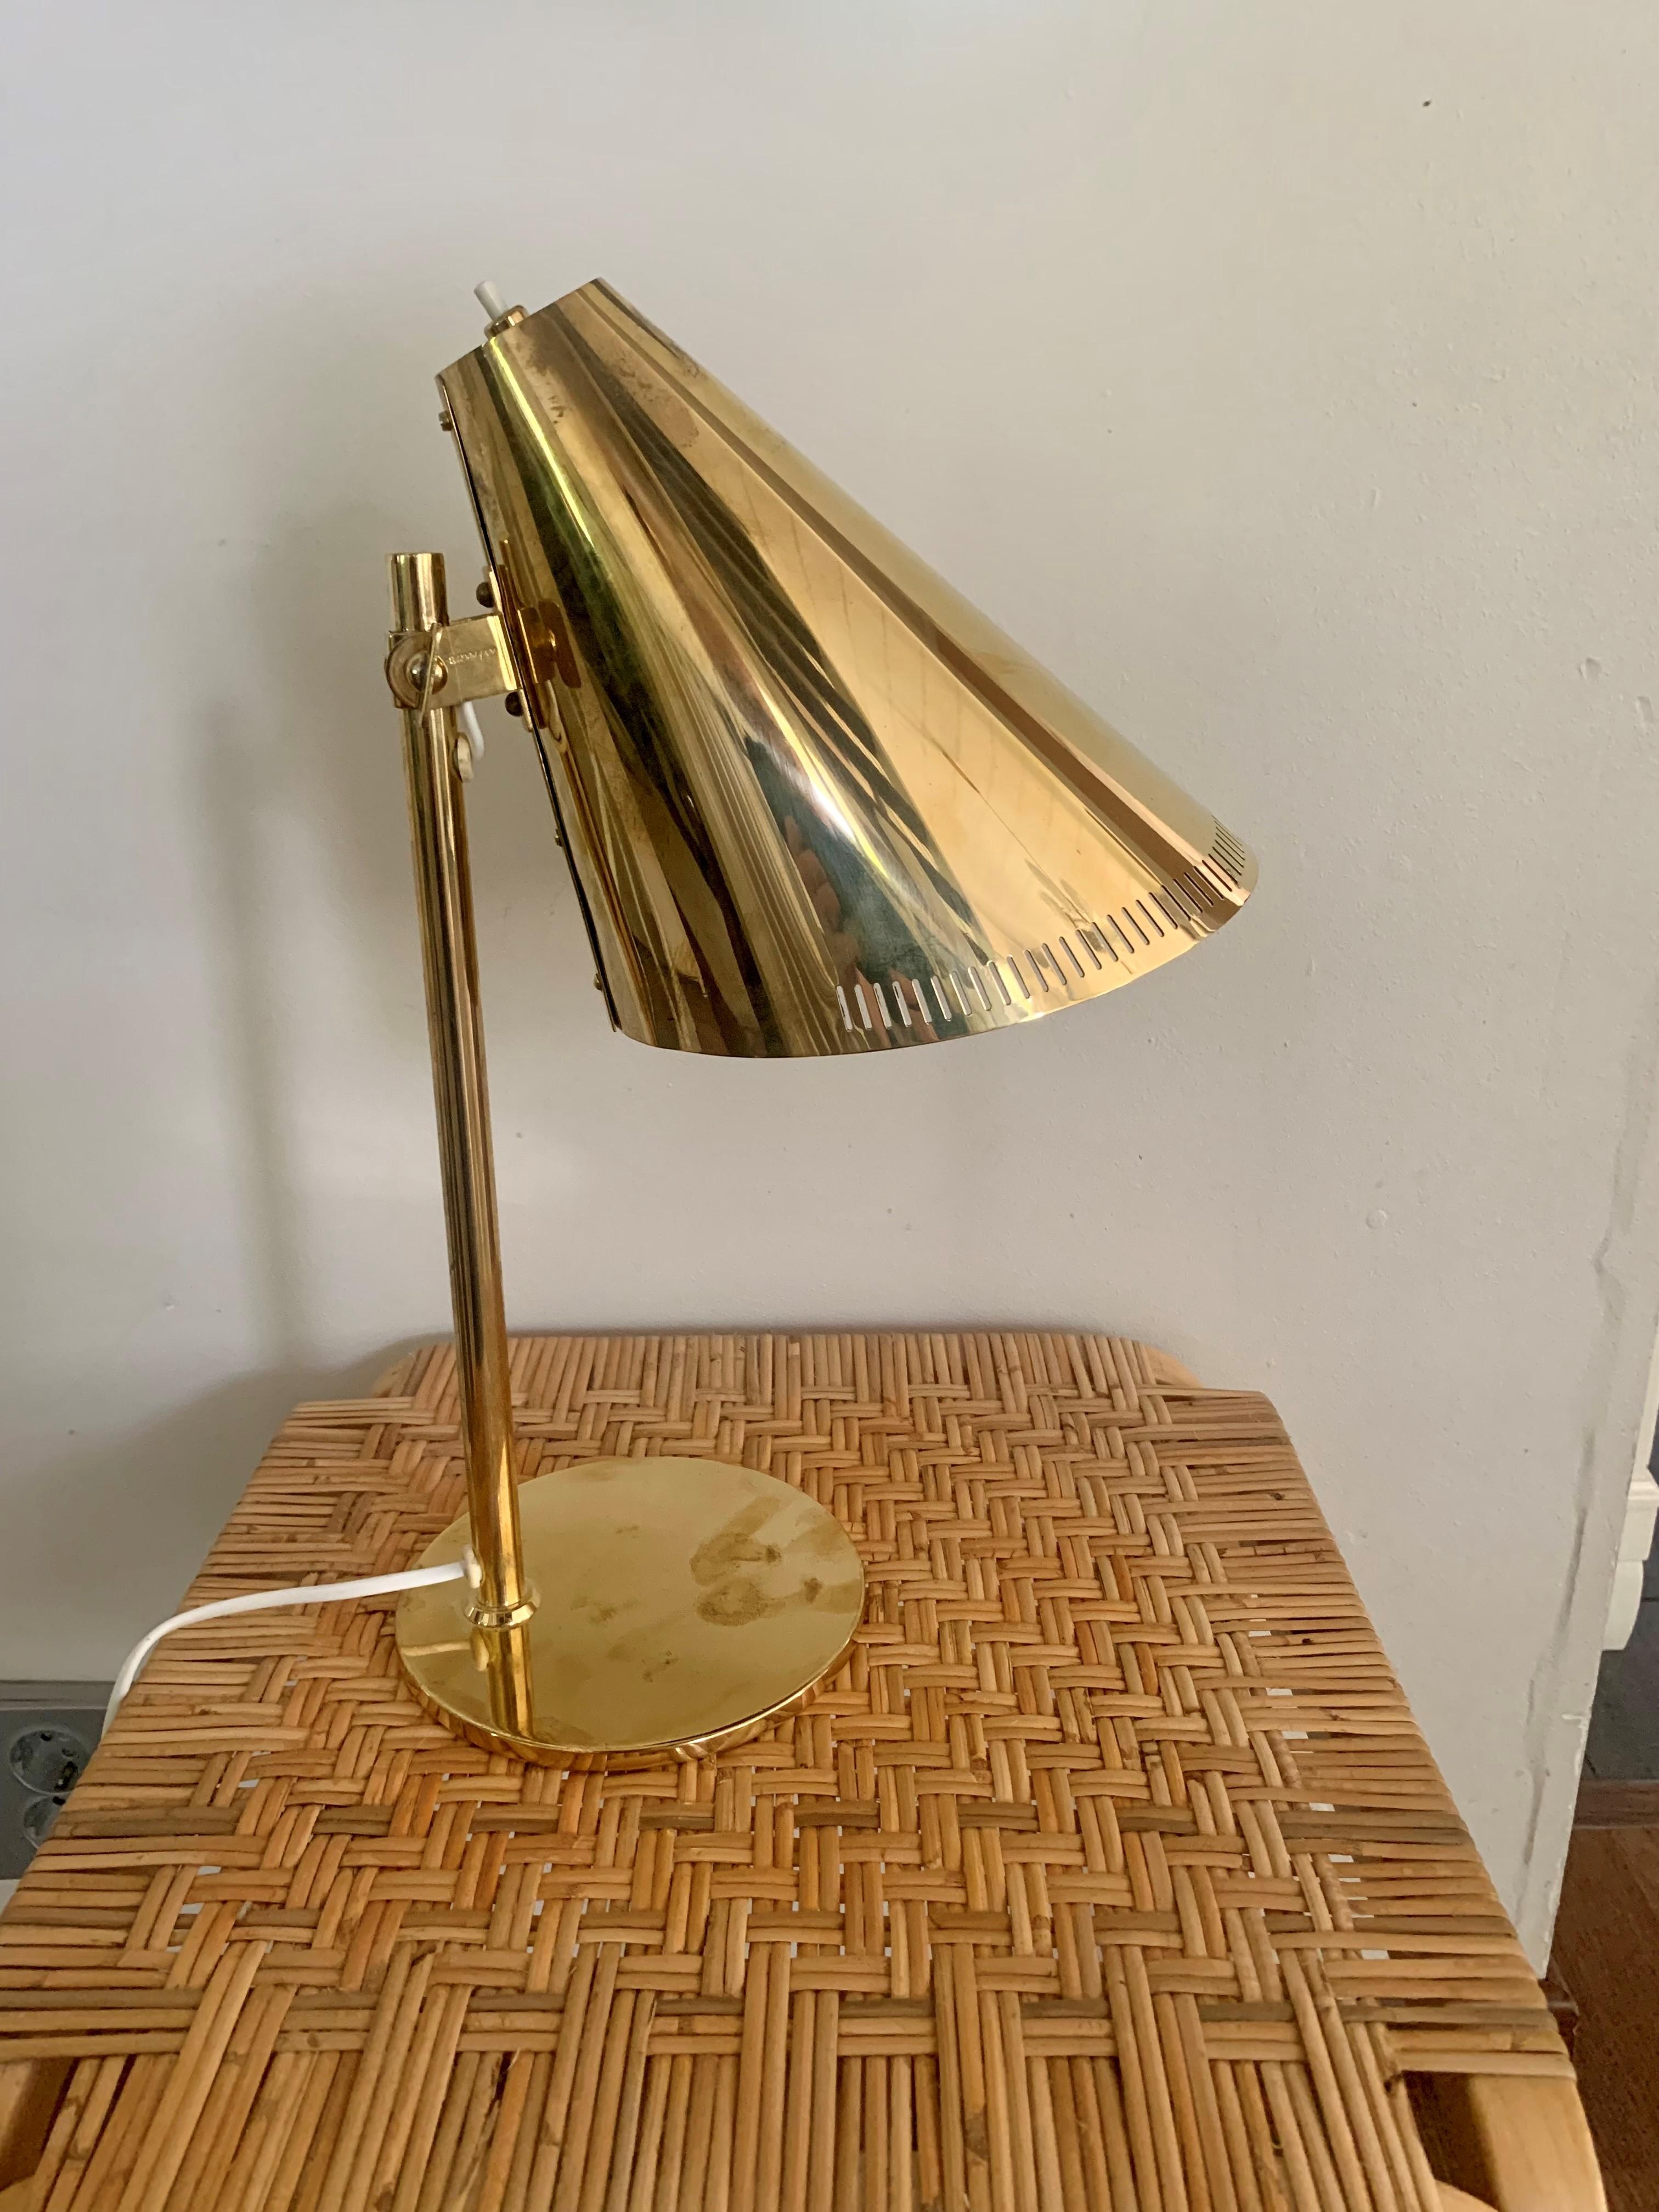 Die von Paavo Tynell entworfene Tischleuchte 9227 strahlt warmes, lebendiges Licht aus. Die Leuchte zeichnet sich durch ihren schönen, schlanken Schirm aus Messing und Glas aus, der auf einem stabilen Ständer steht. Die Tischleuchte eignet sich